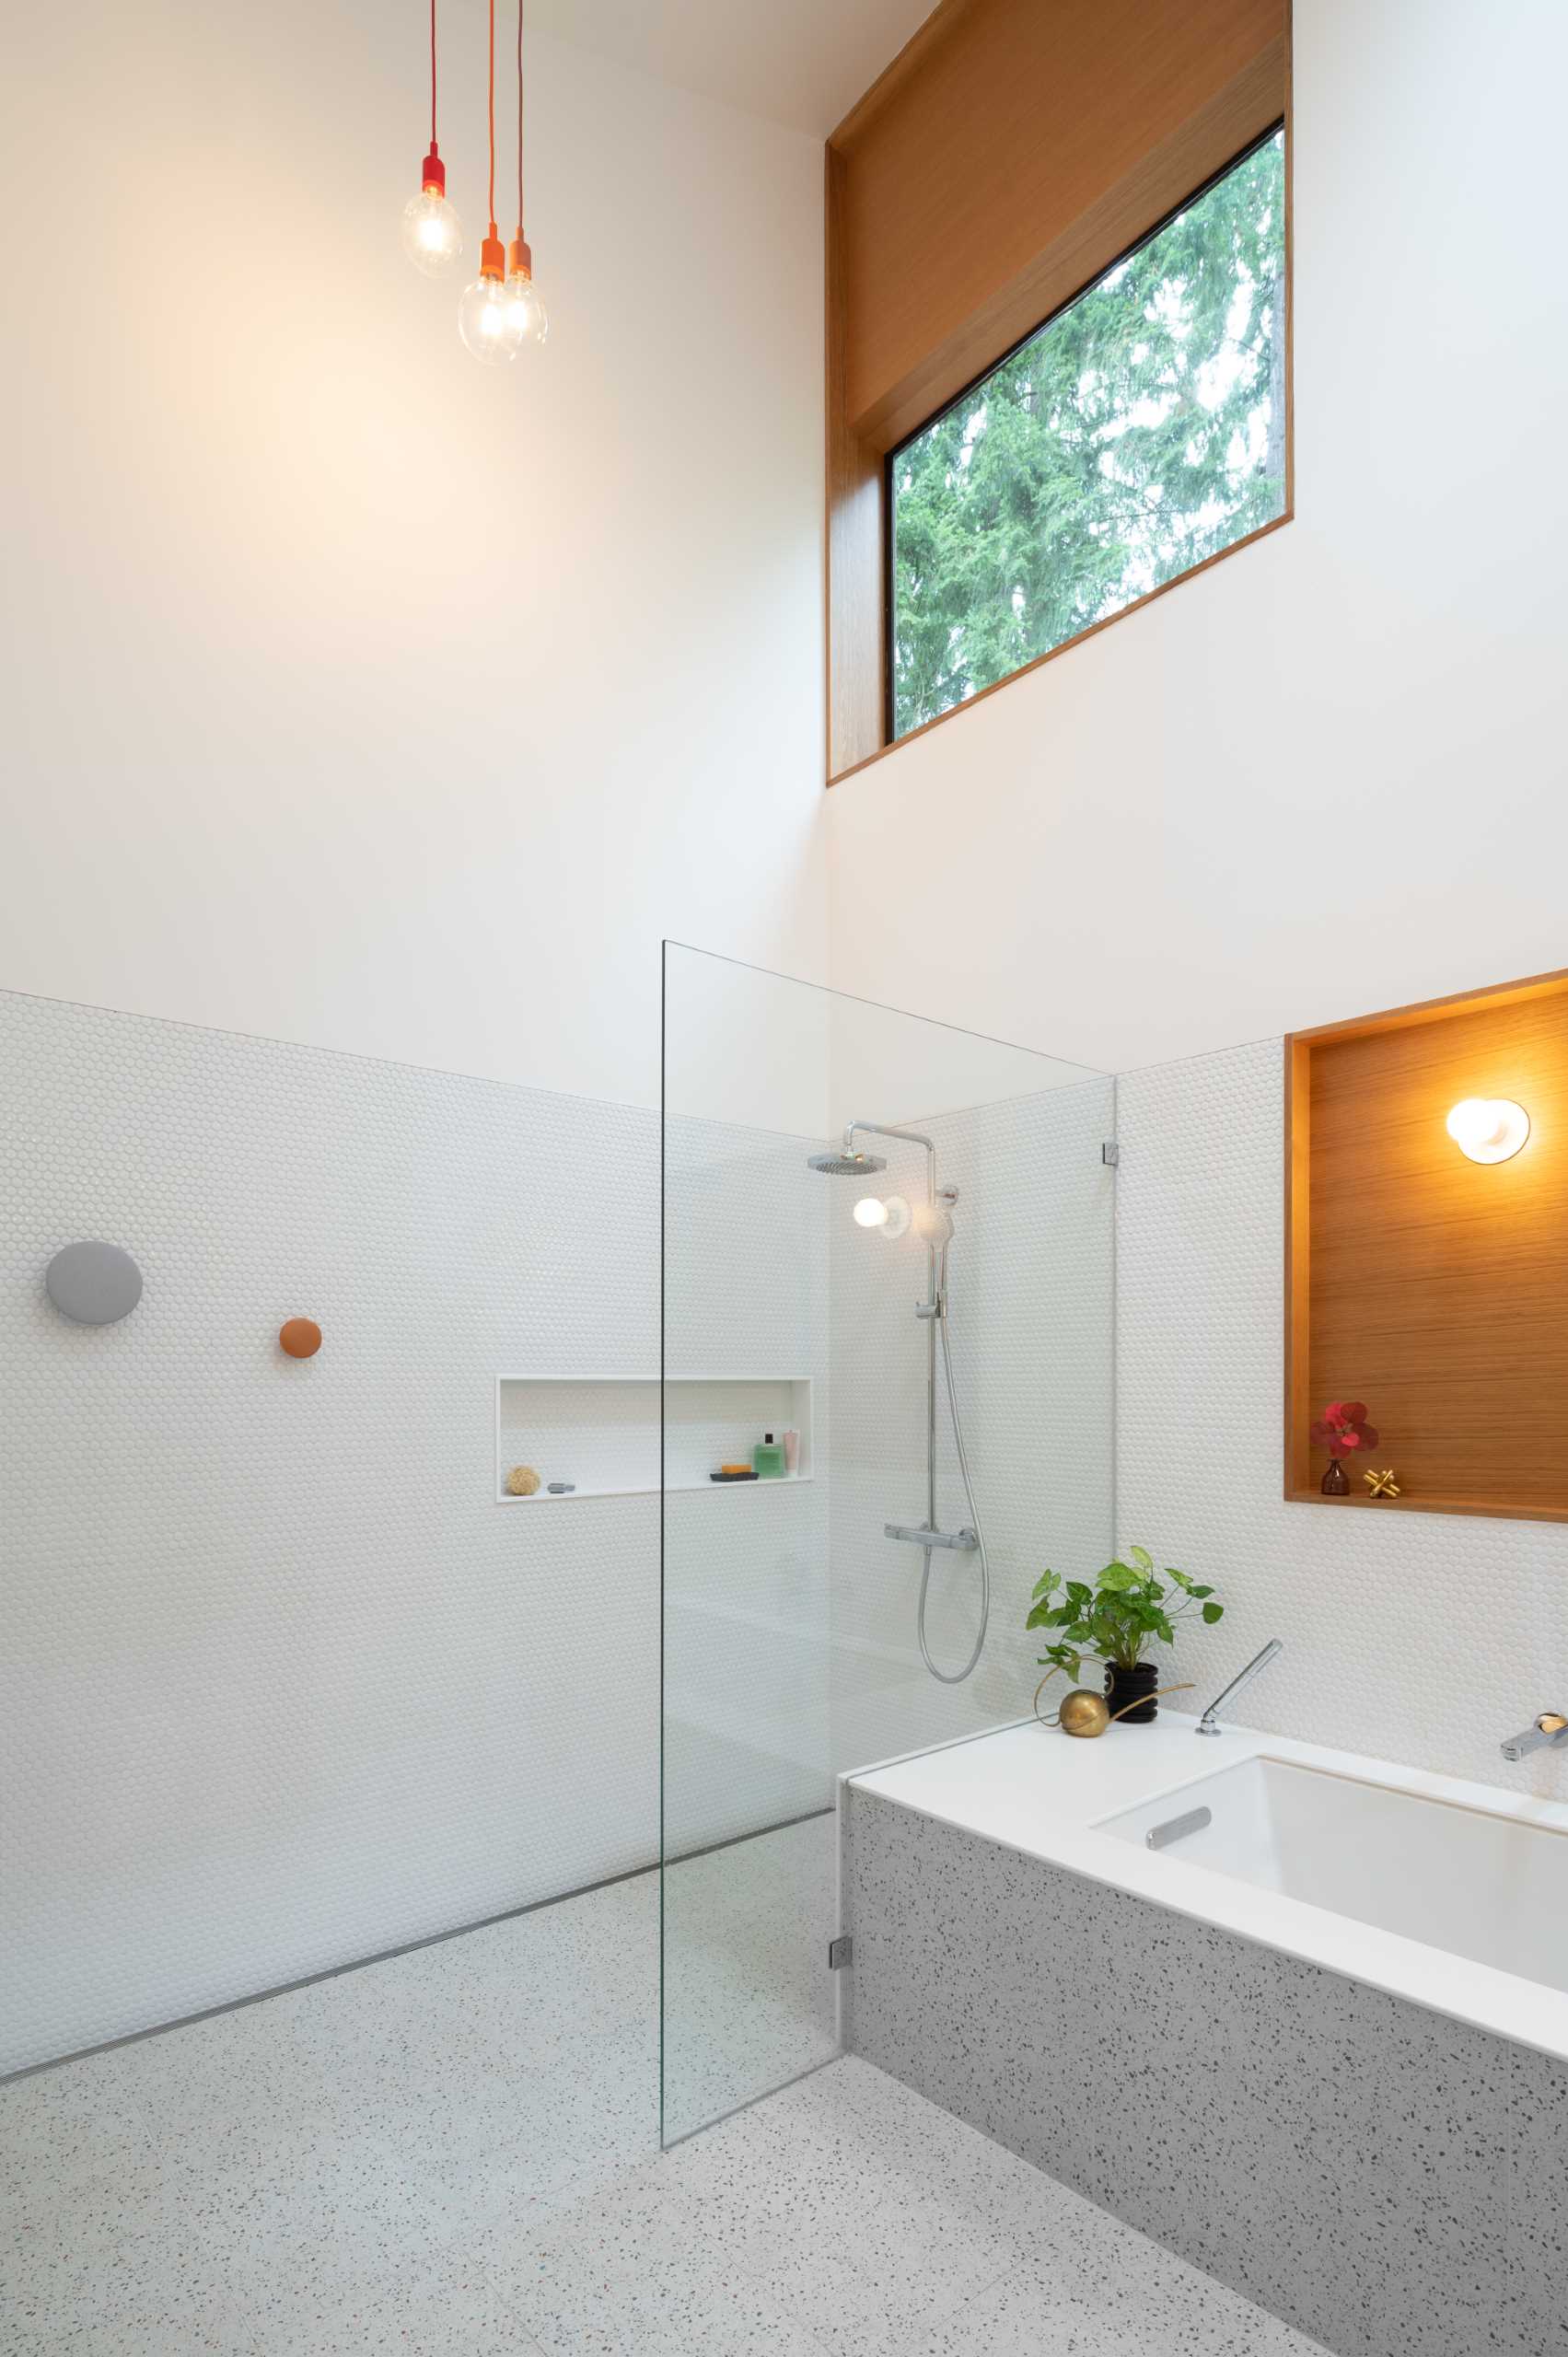 یک حمام مدرن با دیوارهای پوشیده از کاشی‌های پنی سفید، یک وان حمام توکار، و یک دوش با طاقچه قفسه‌بندی.